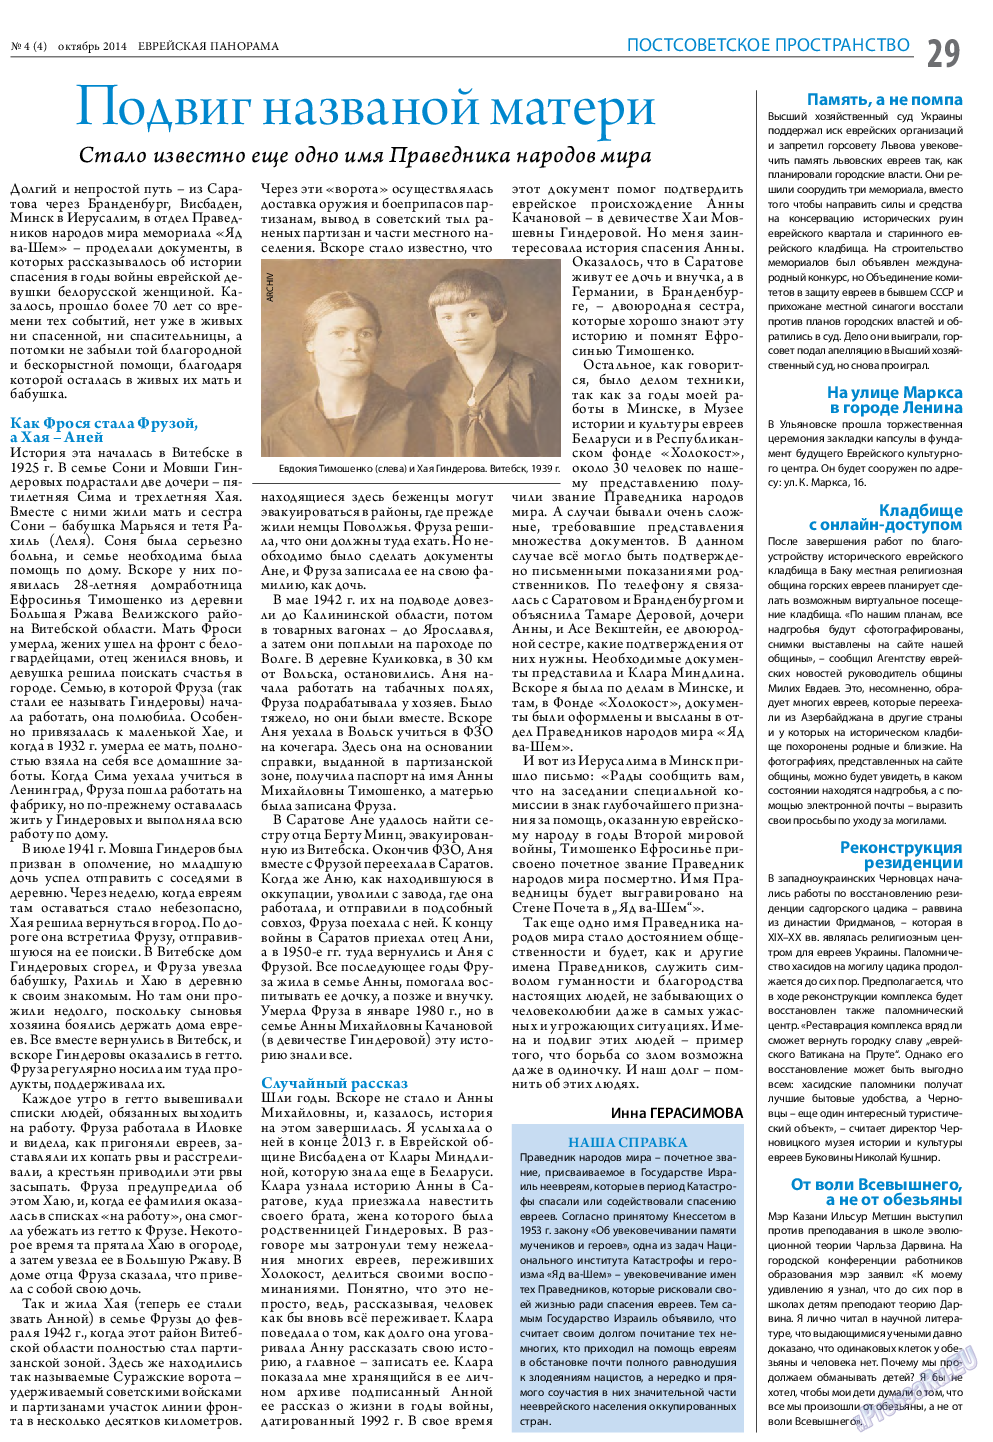 Еврейская панорама (газета). 2014 год, номер 4, стр. 29